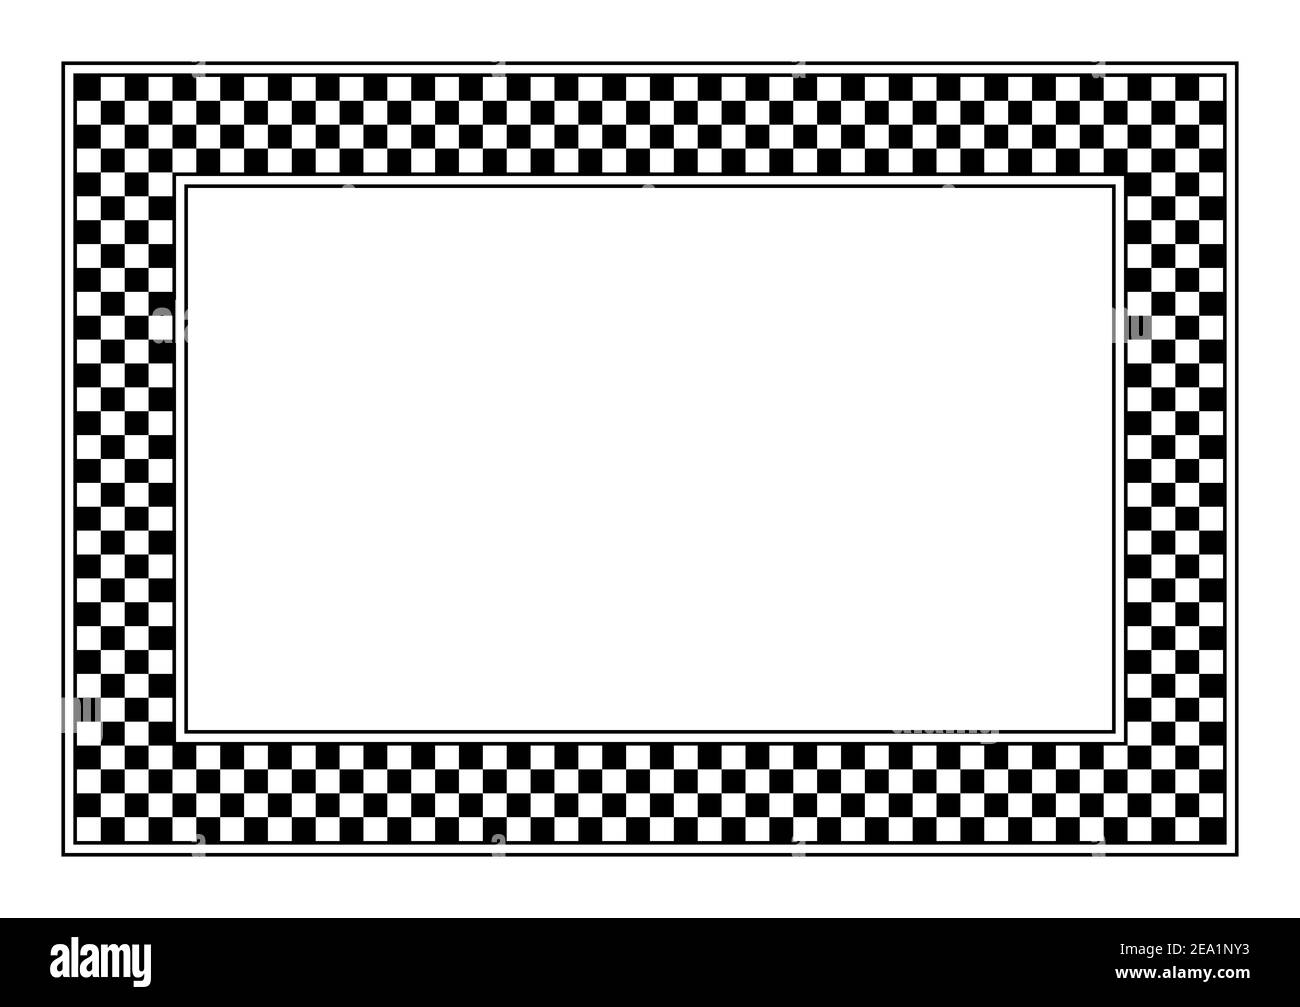 Schachbrettmuster, rechteckiger Rahmen. Ein karierter Musterrahmen, der aus einem Schachbrettdiagramm besteht, das aus schwarzen und weißen alternierenden Quadraten besteht. Stockfoto